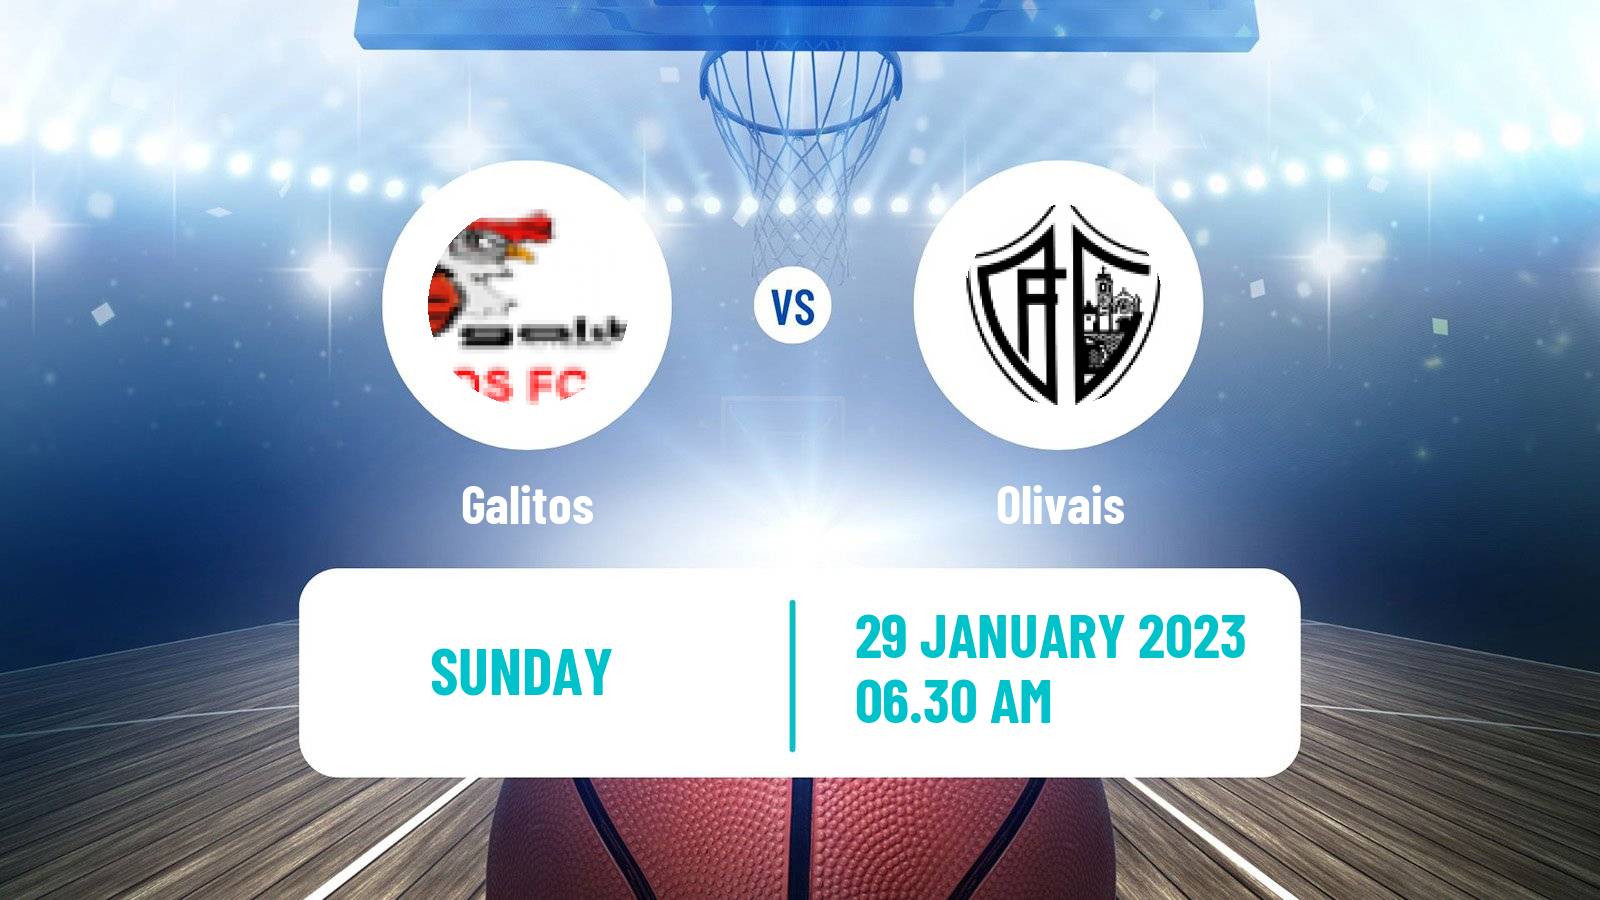 Basketball Portuguese LFB Galitos - Olivais